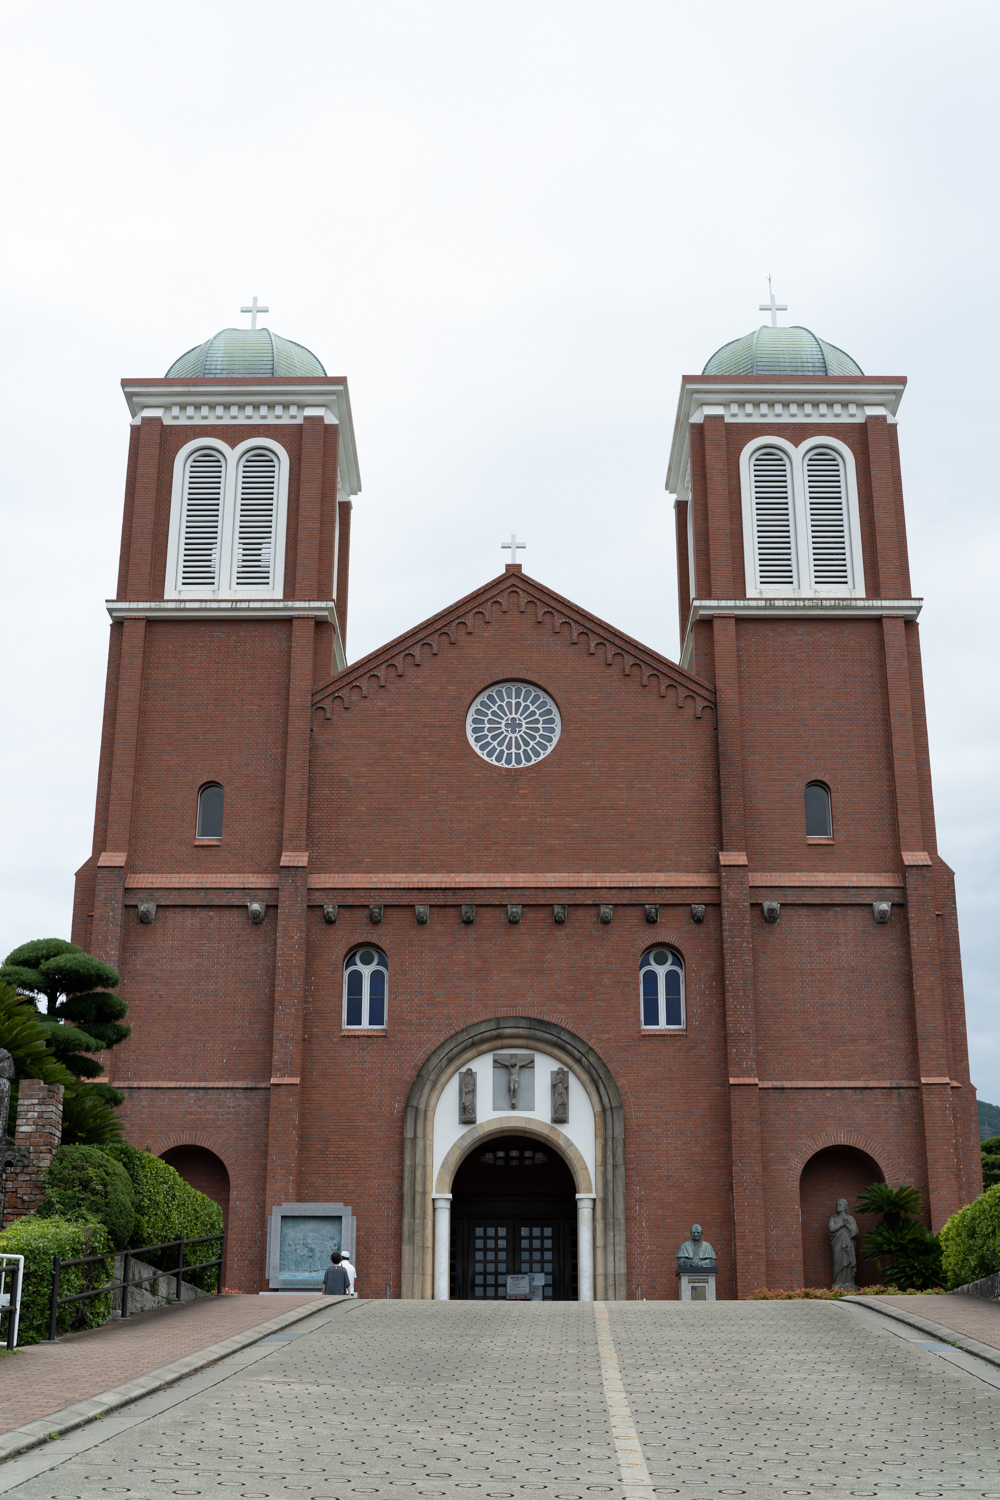 茶色いレンガ造りの浦上教会。2つの塔が左右対称にある